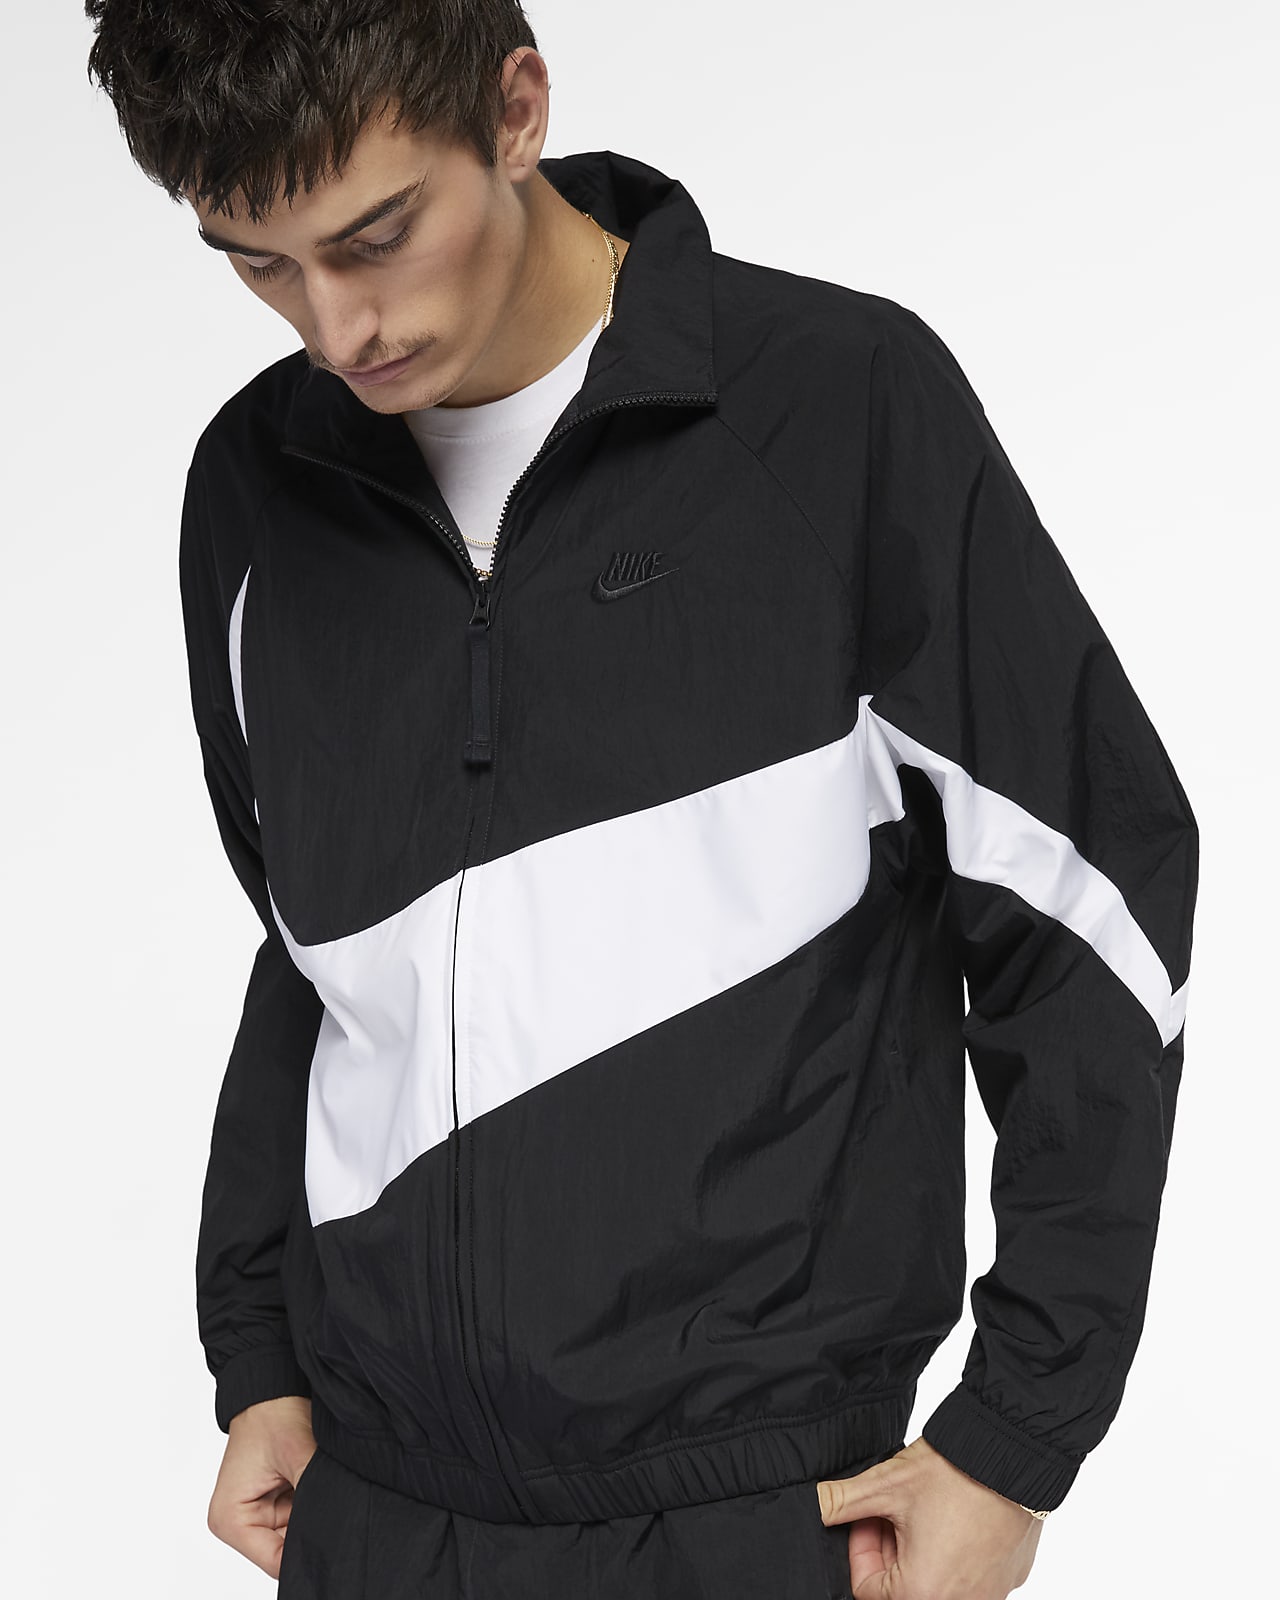 Nike Sportswear Men's Woven Jacket. Nike SG